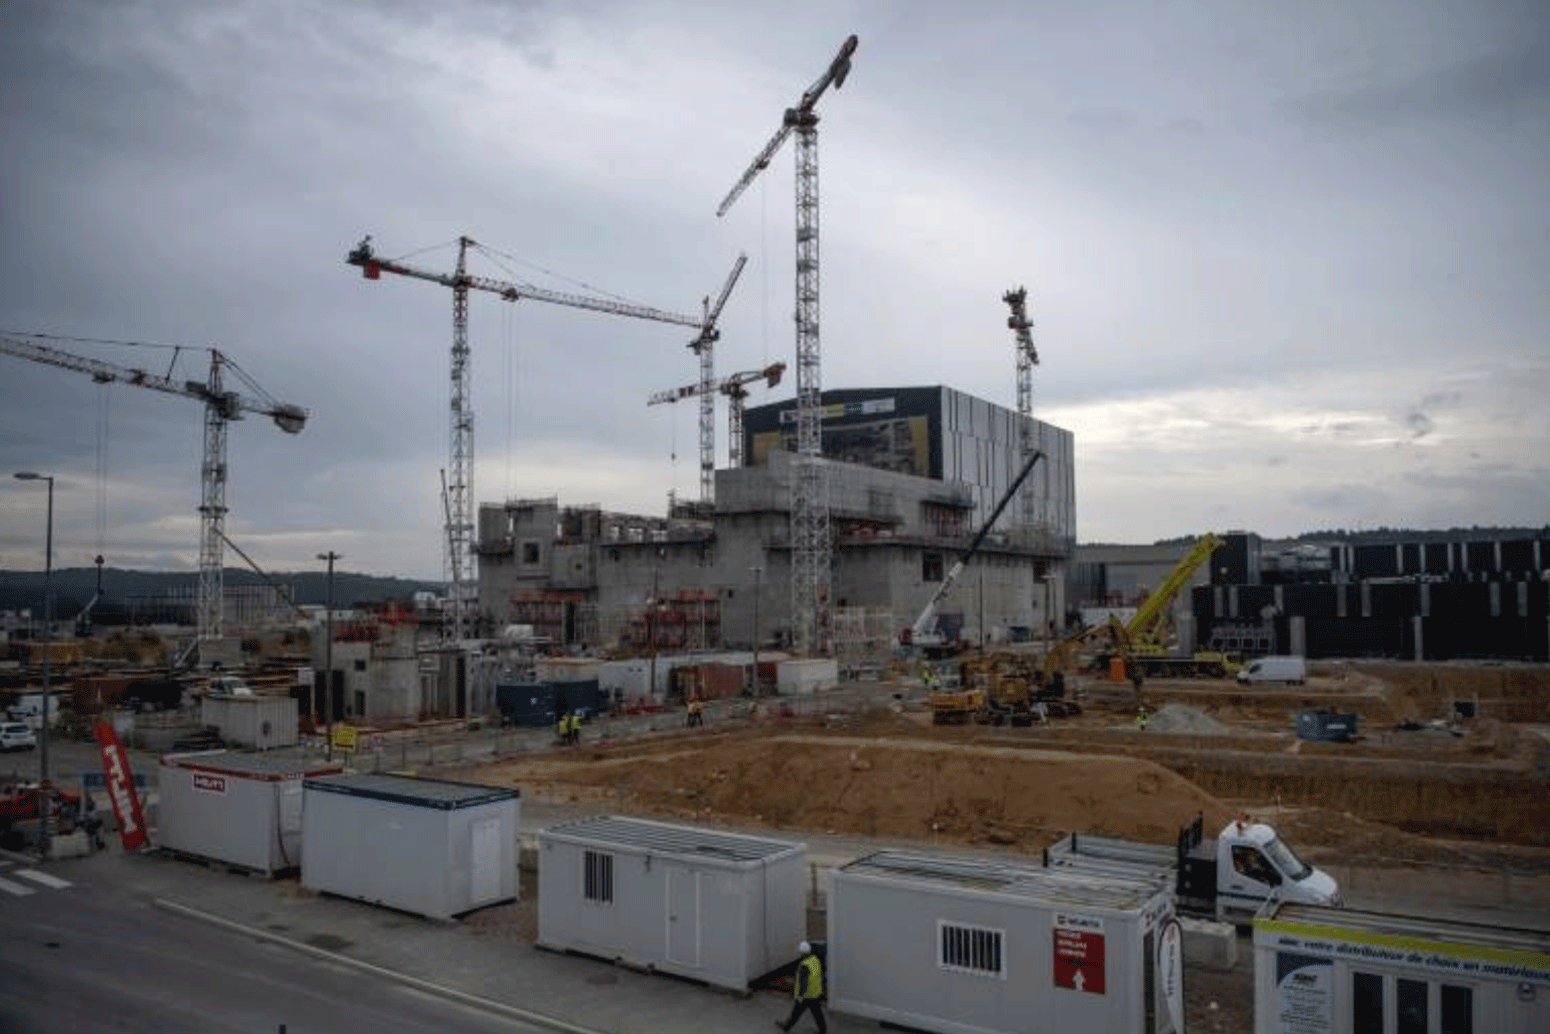 انطلاق أشغال بناء المفاعل في سان بول ليه دورانس في فرنسا، بتاريخ 18 أكتوبر 2020